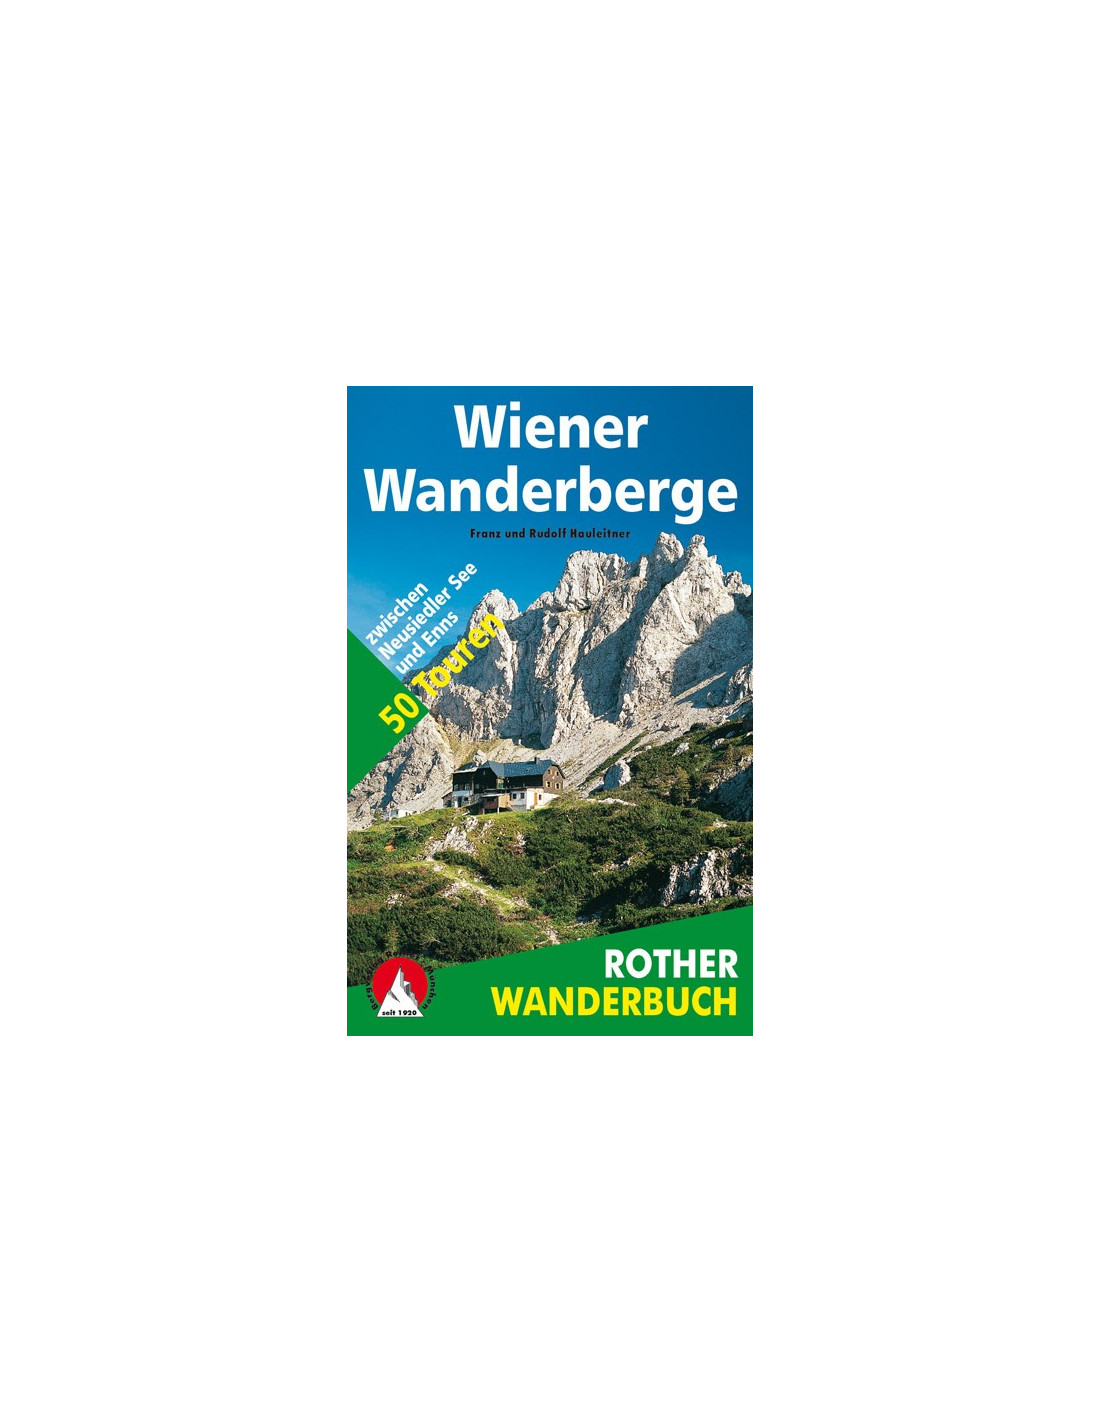 Rother Wanderbuch Wiener Wanderberge Buchkategorie - Wanderbücher, Regionen - Niederösterreich / Wien, von Bergverlag Rother